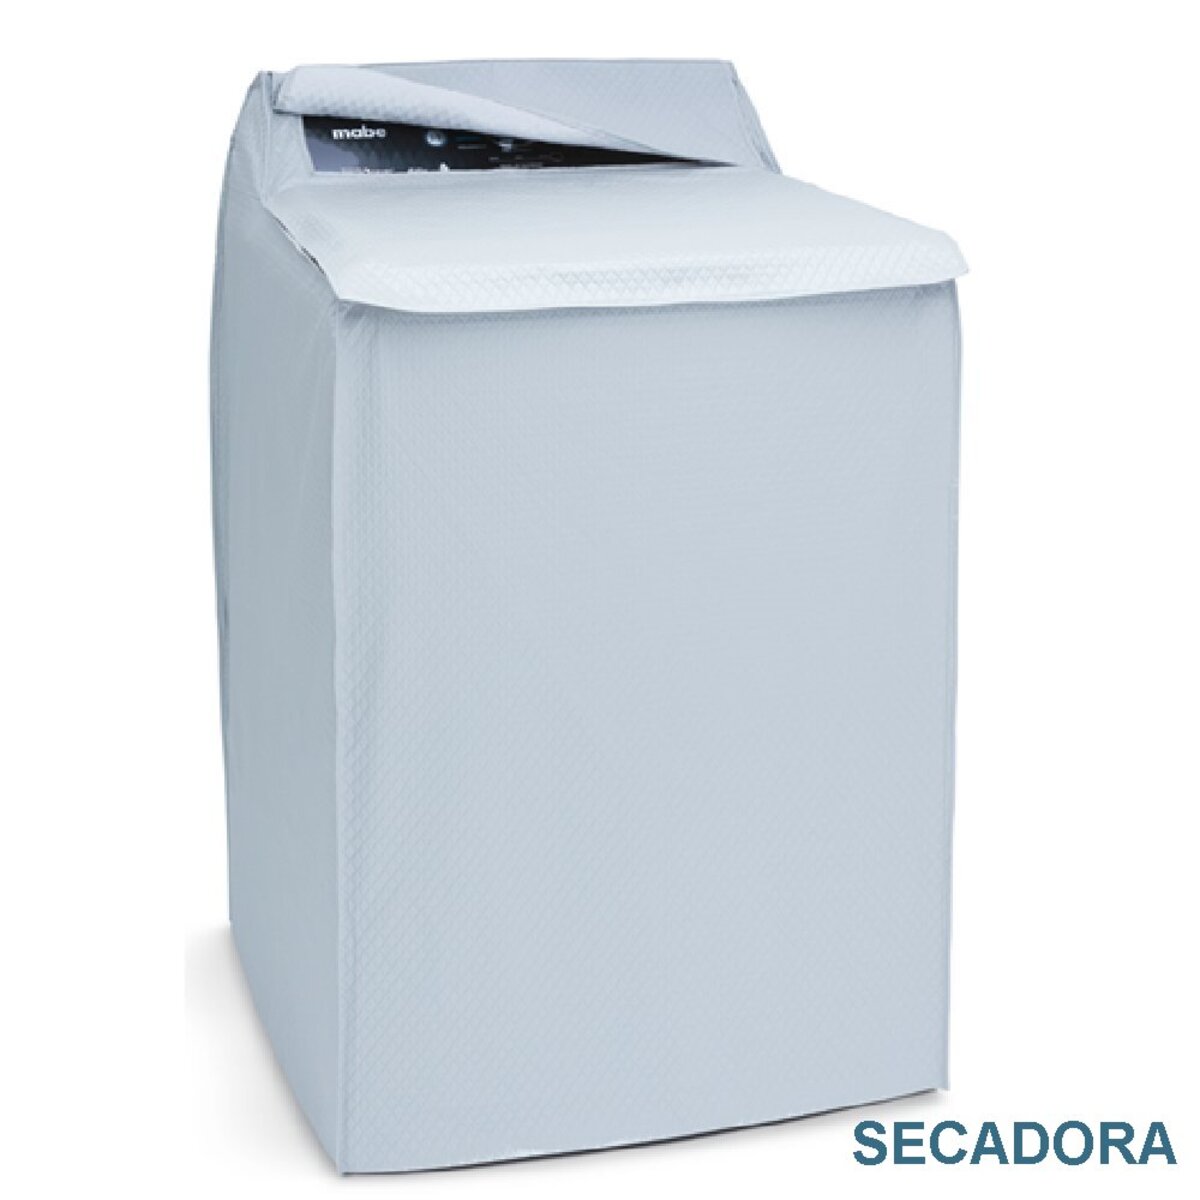 Funda para secadora de lona - WG04A05049, Secadoras Refacciones, Lavado y  Secado Refacciones